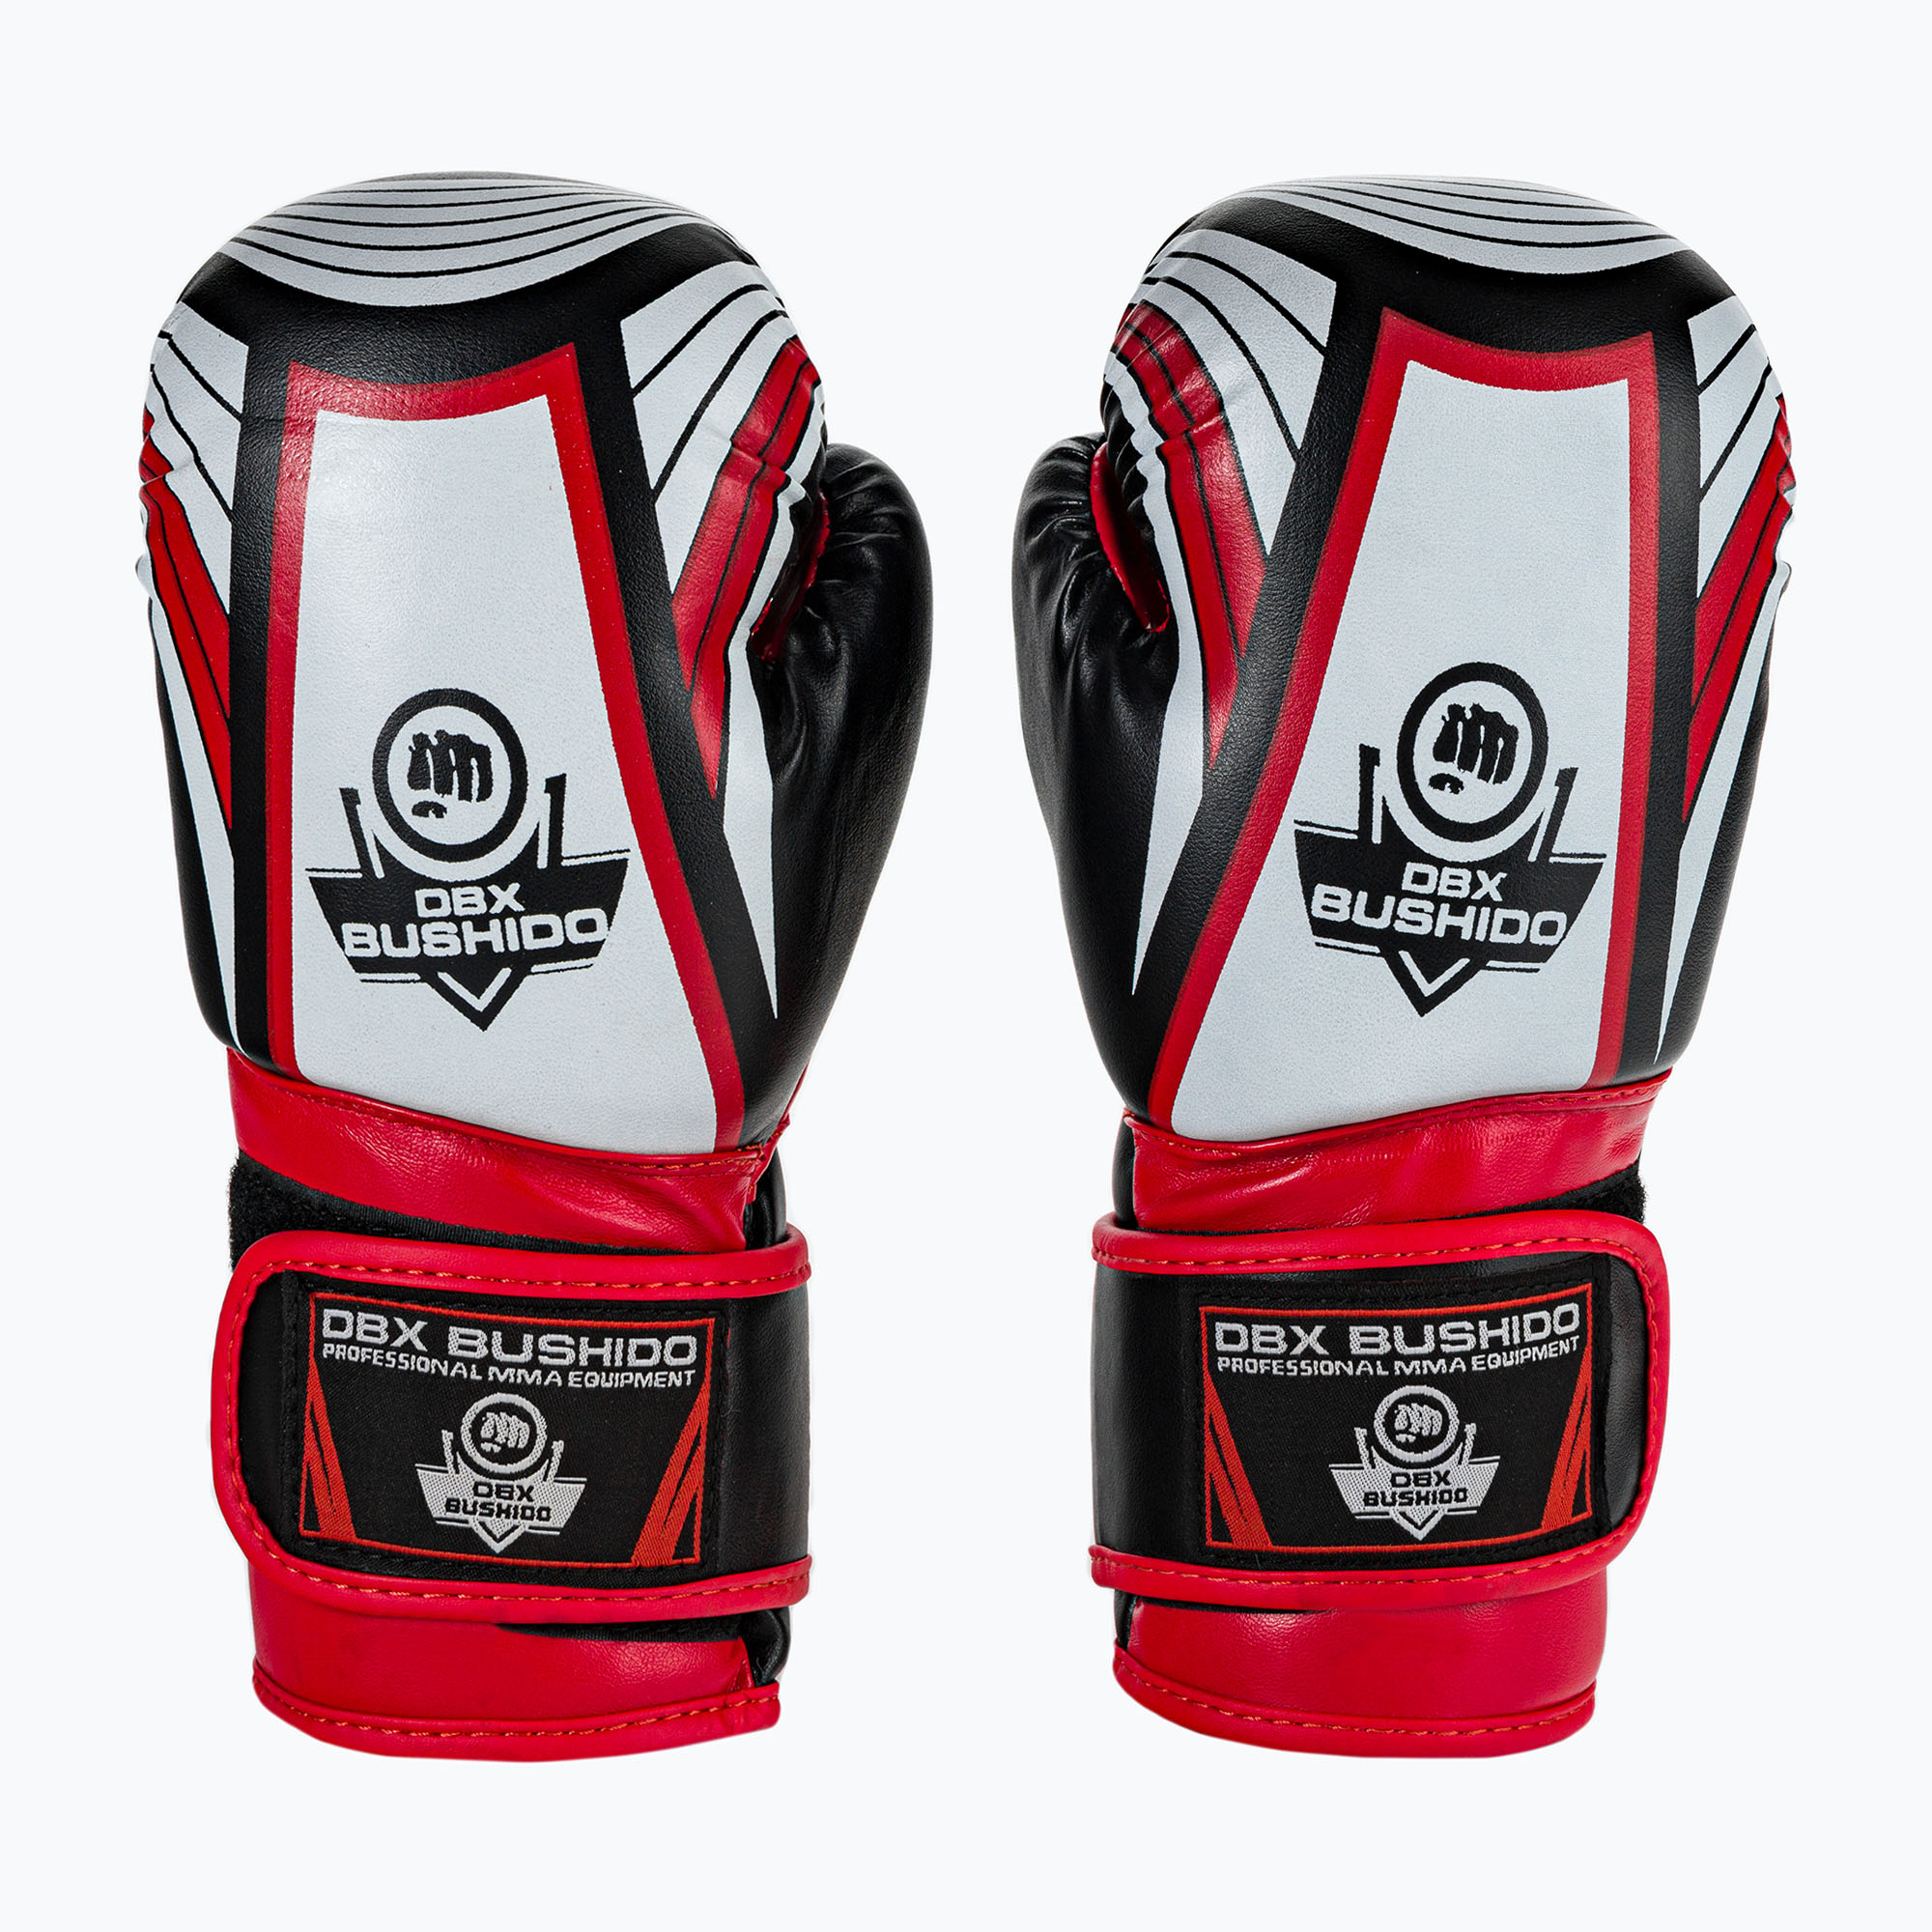 Bushido ARB-407v2 mănuși de box pentru copii negru și roșu